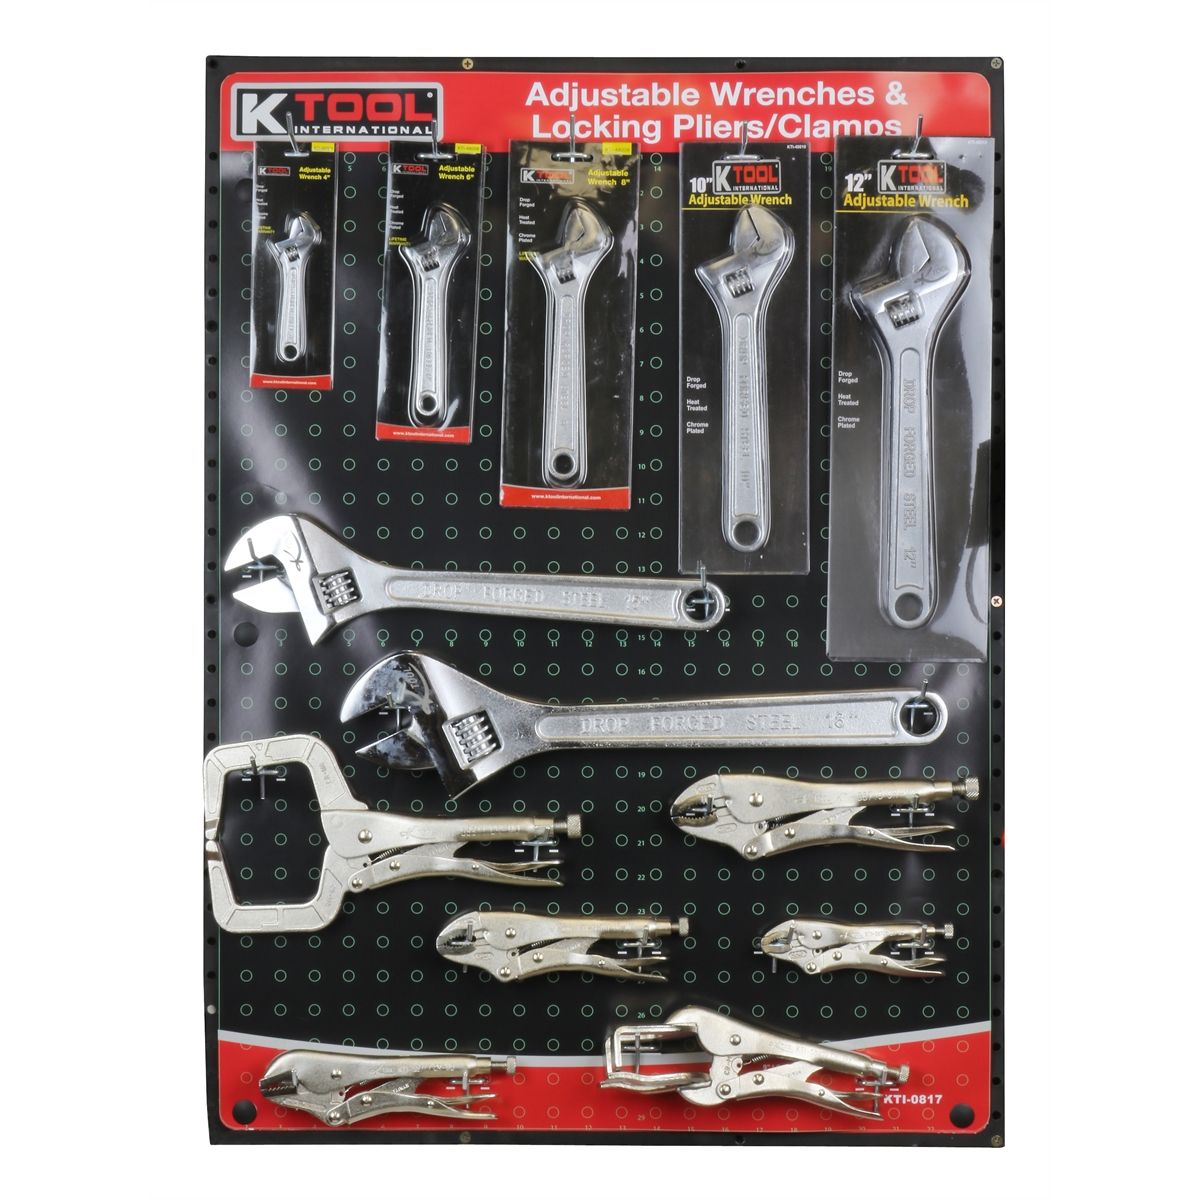 K-Tool International KTI KTI-49012 Wrench 